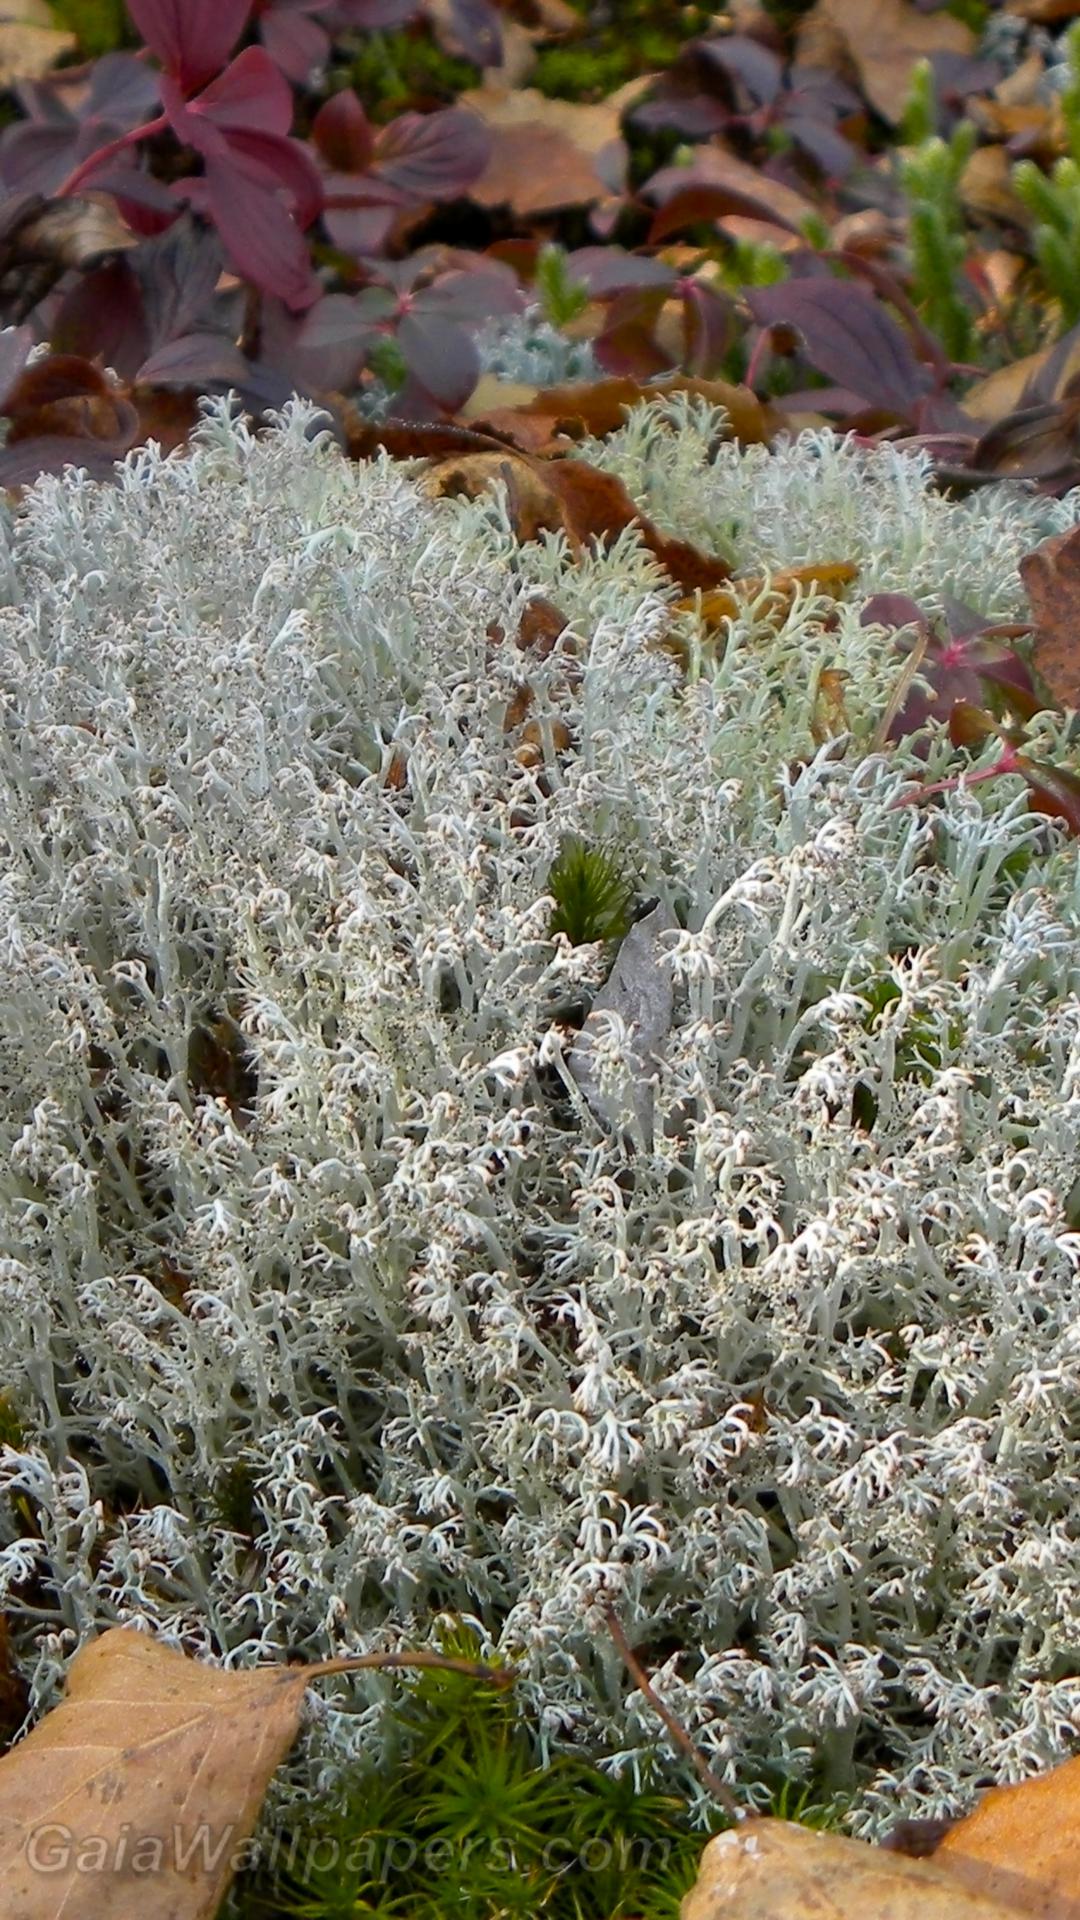 Lichen dans un couvert de feuilles mortes - Fonds d'écran gratuits